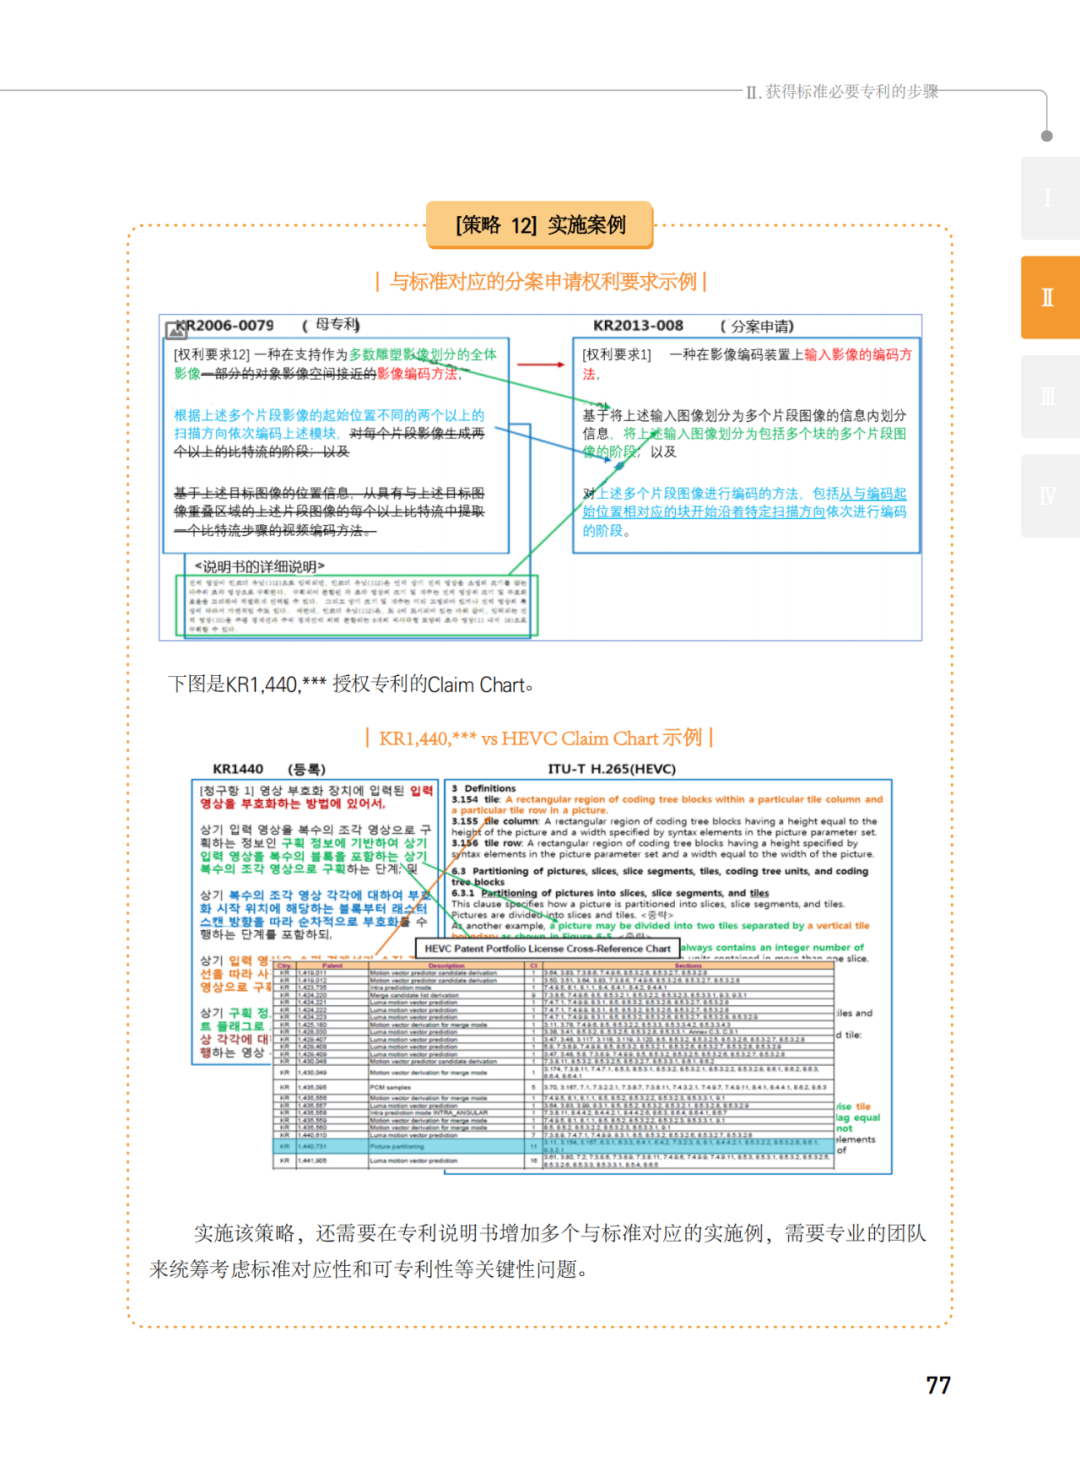 国知局发布《韩国标准必要专利指南2.0》中文译文版！